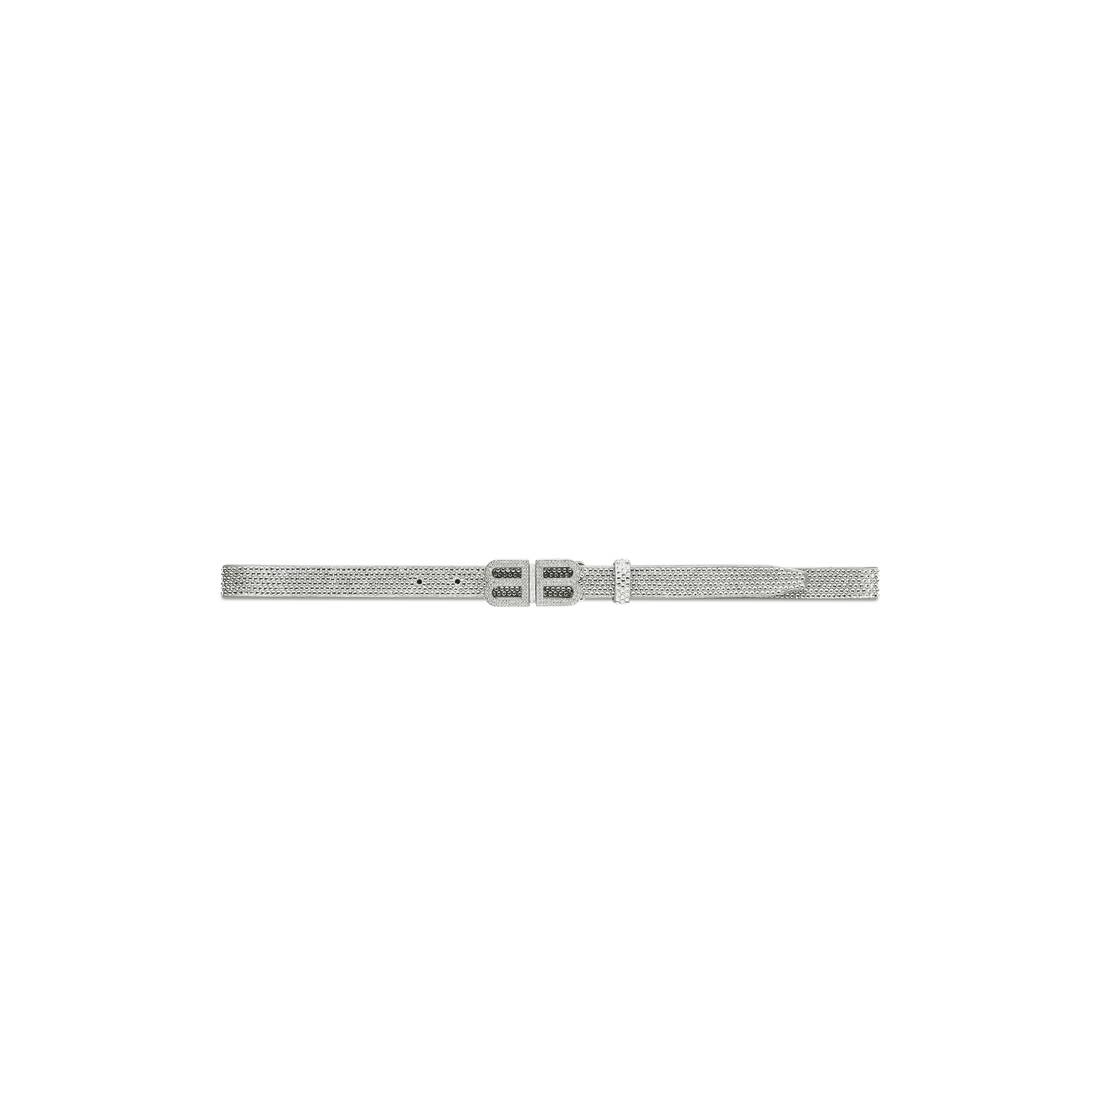 Women's Bb Hourglass Thin Belt With Rhinestones in Grey - 1